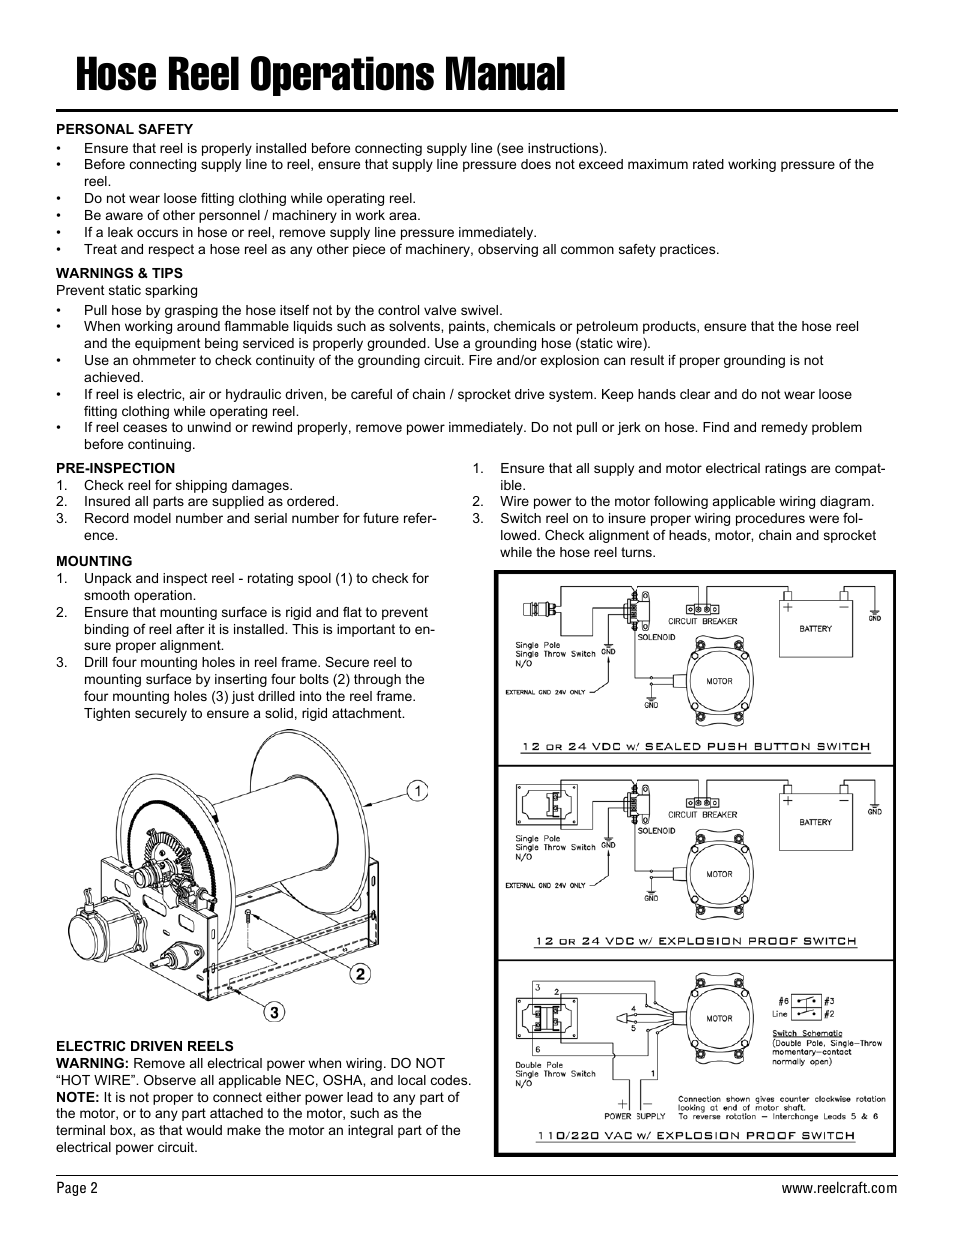 Hose reel operations manual | Reelcraft Nordic Series 3900 Reels User